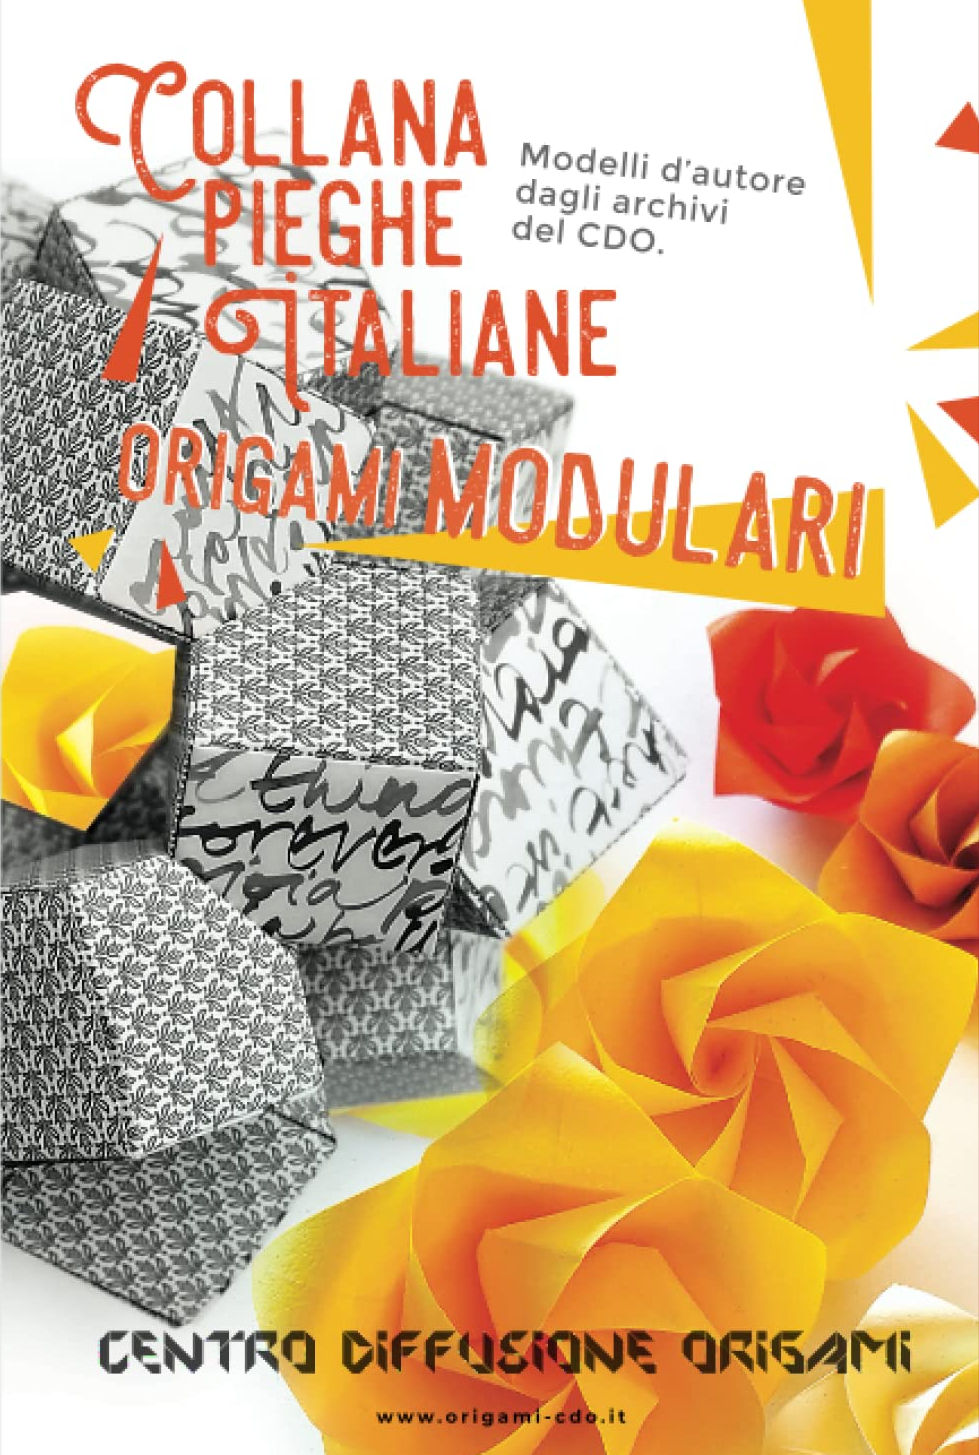 Collana pieghe Italiane - origami MODULARI : page 144.